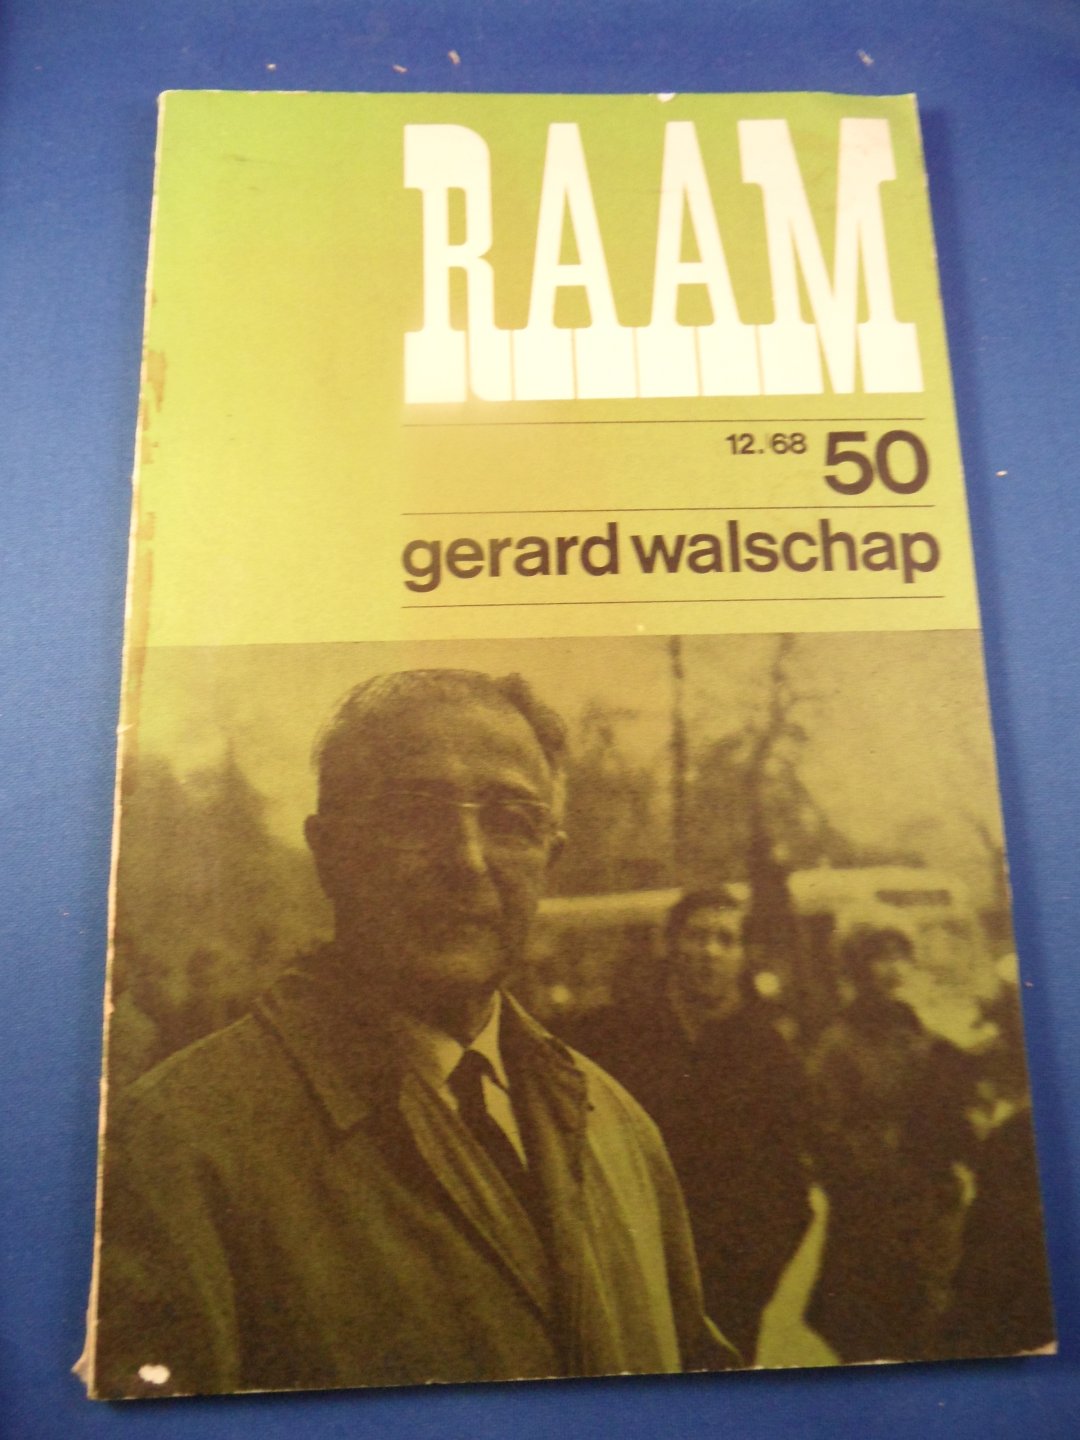 Raam - Gerard Walschap. 12.68 nr. 50